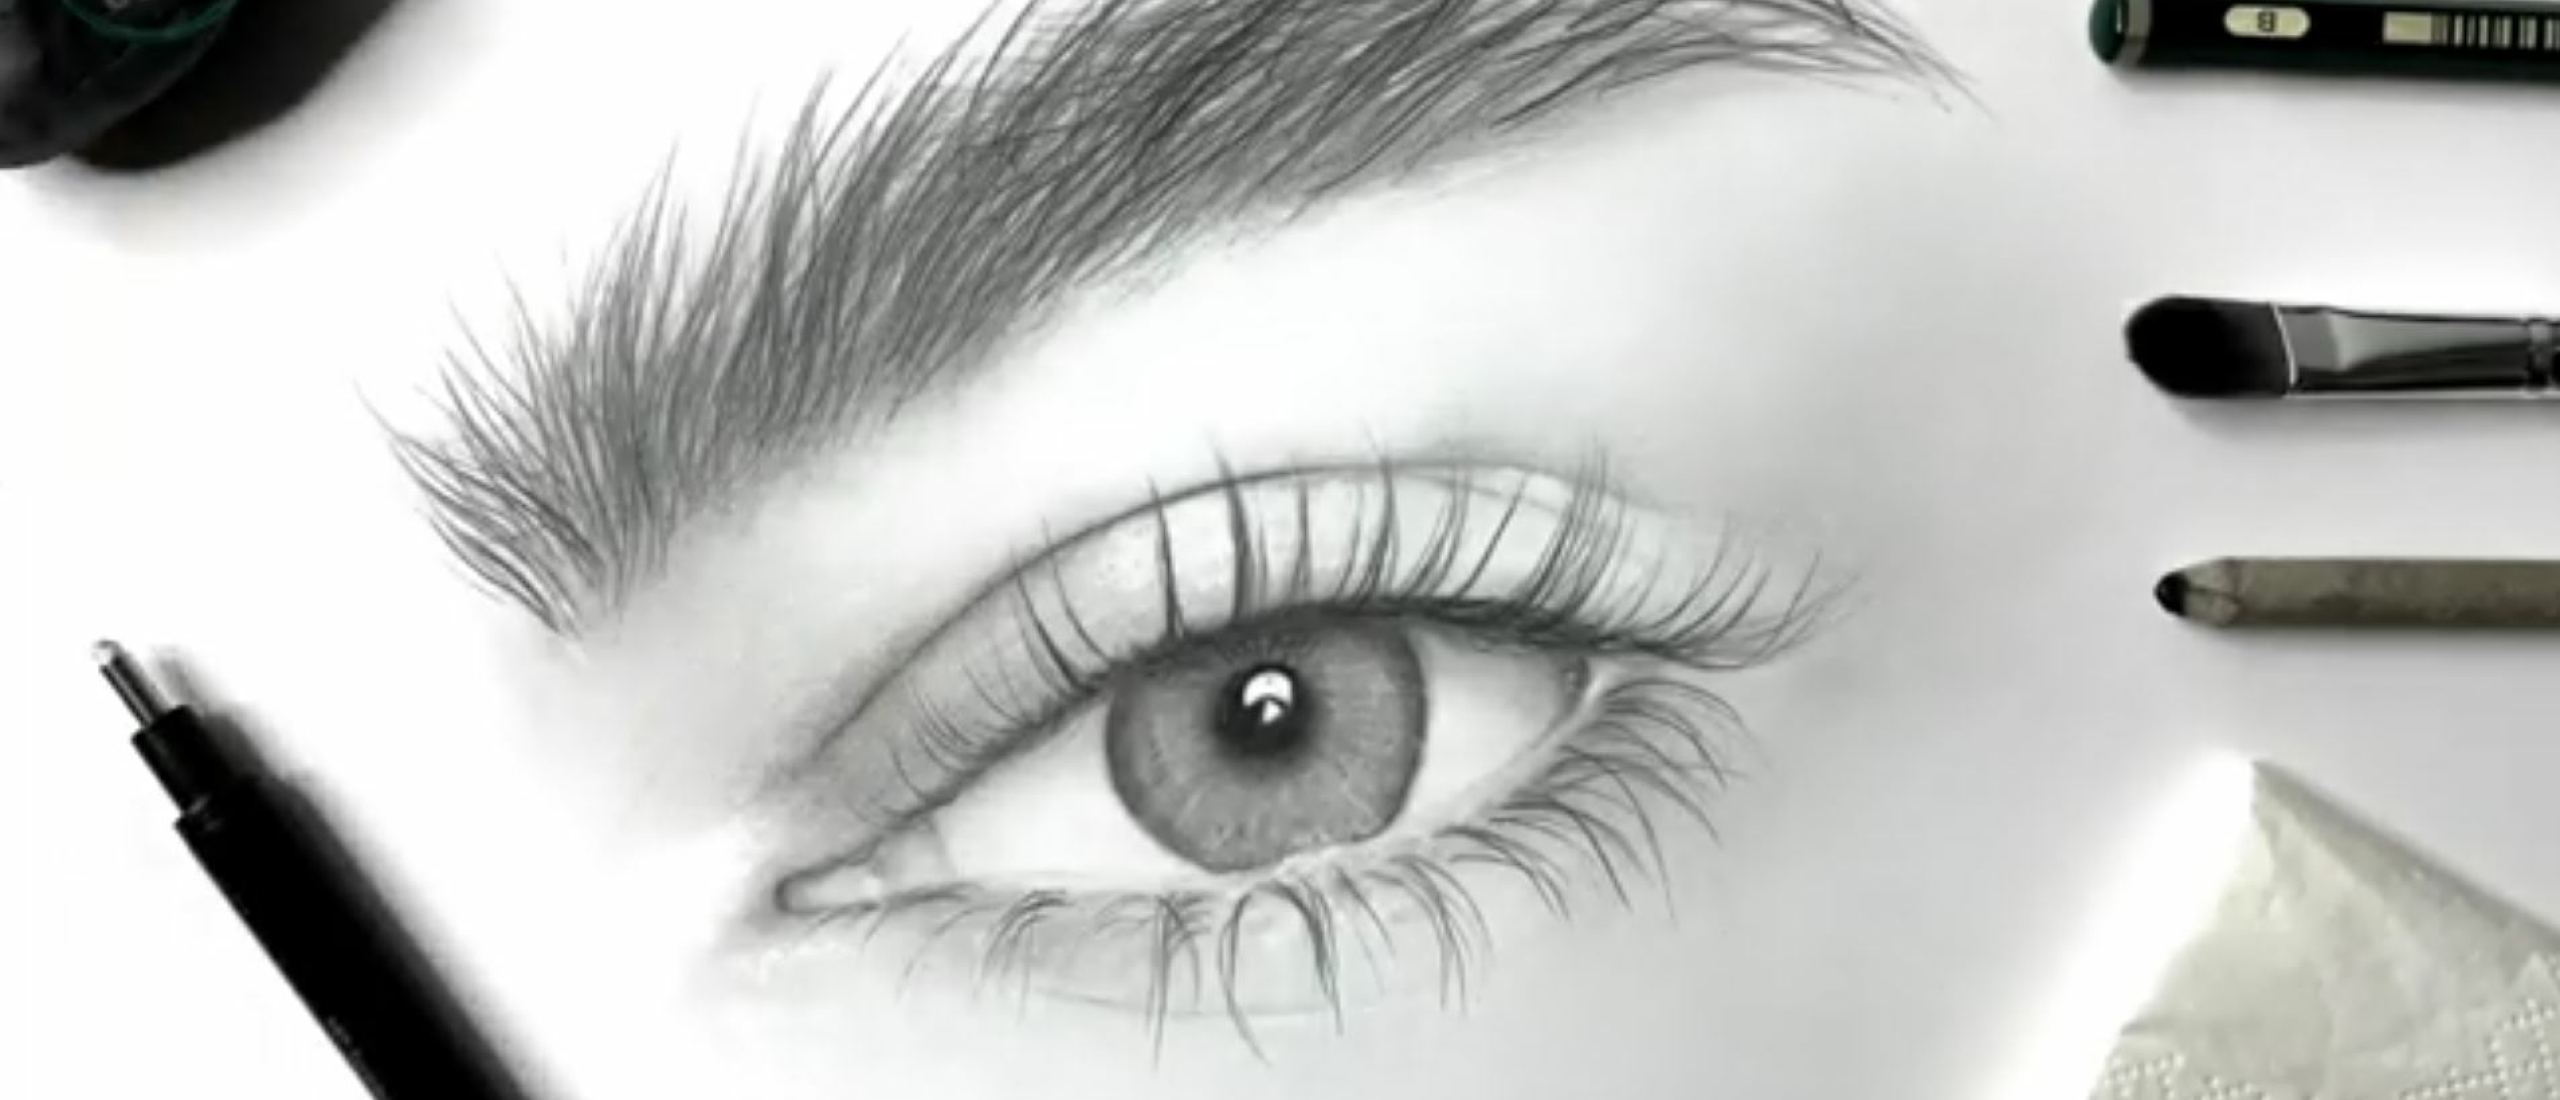 Hoe teken je een realistisch oog?